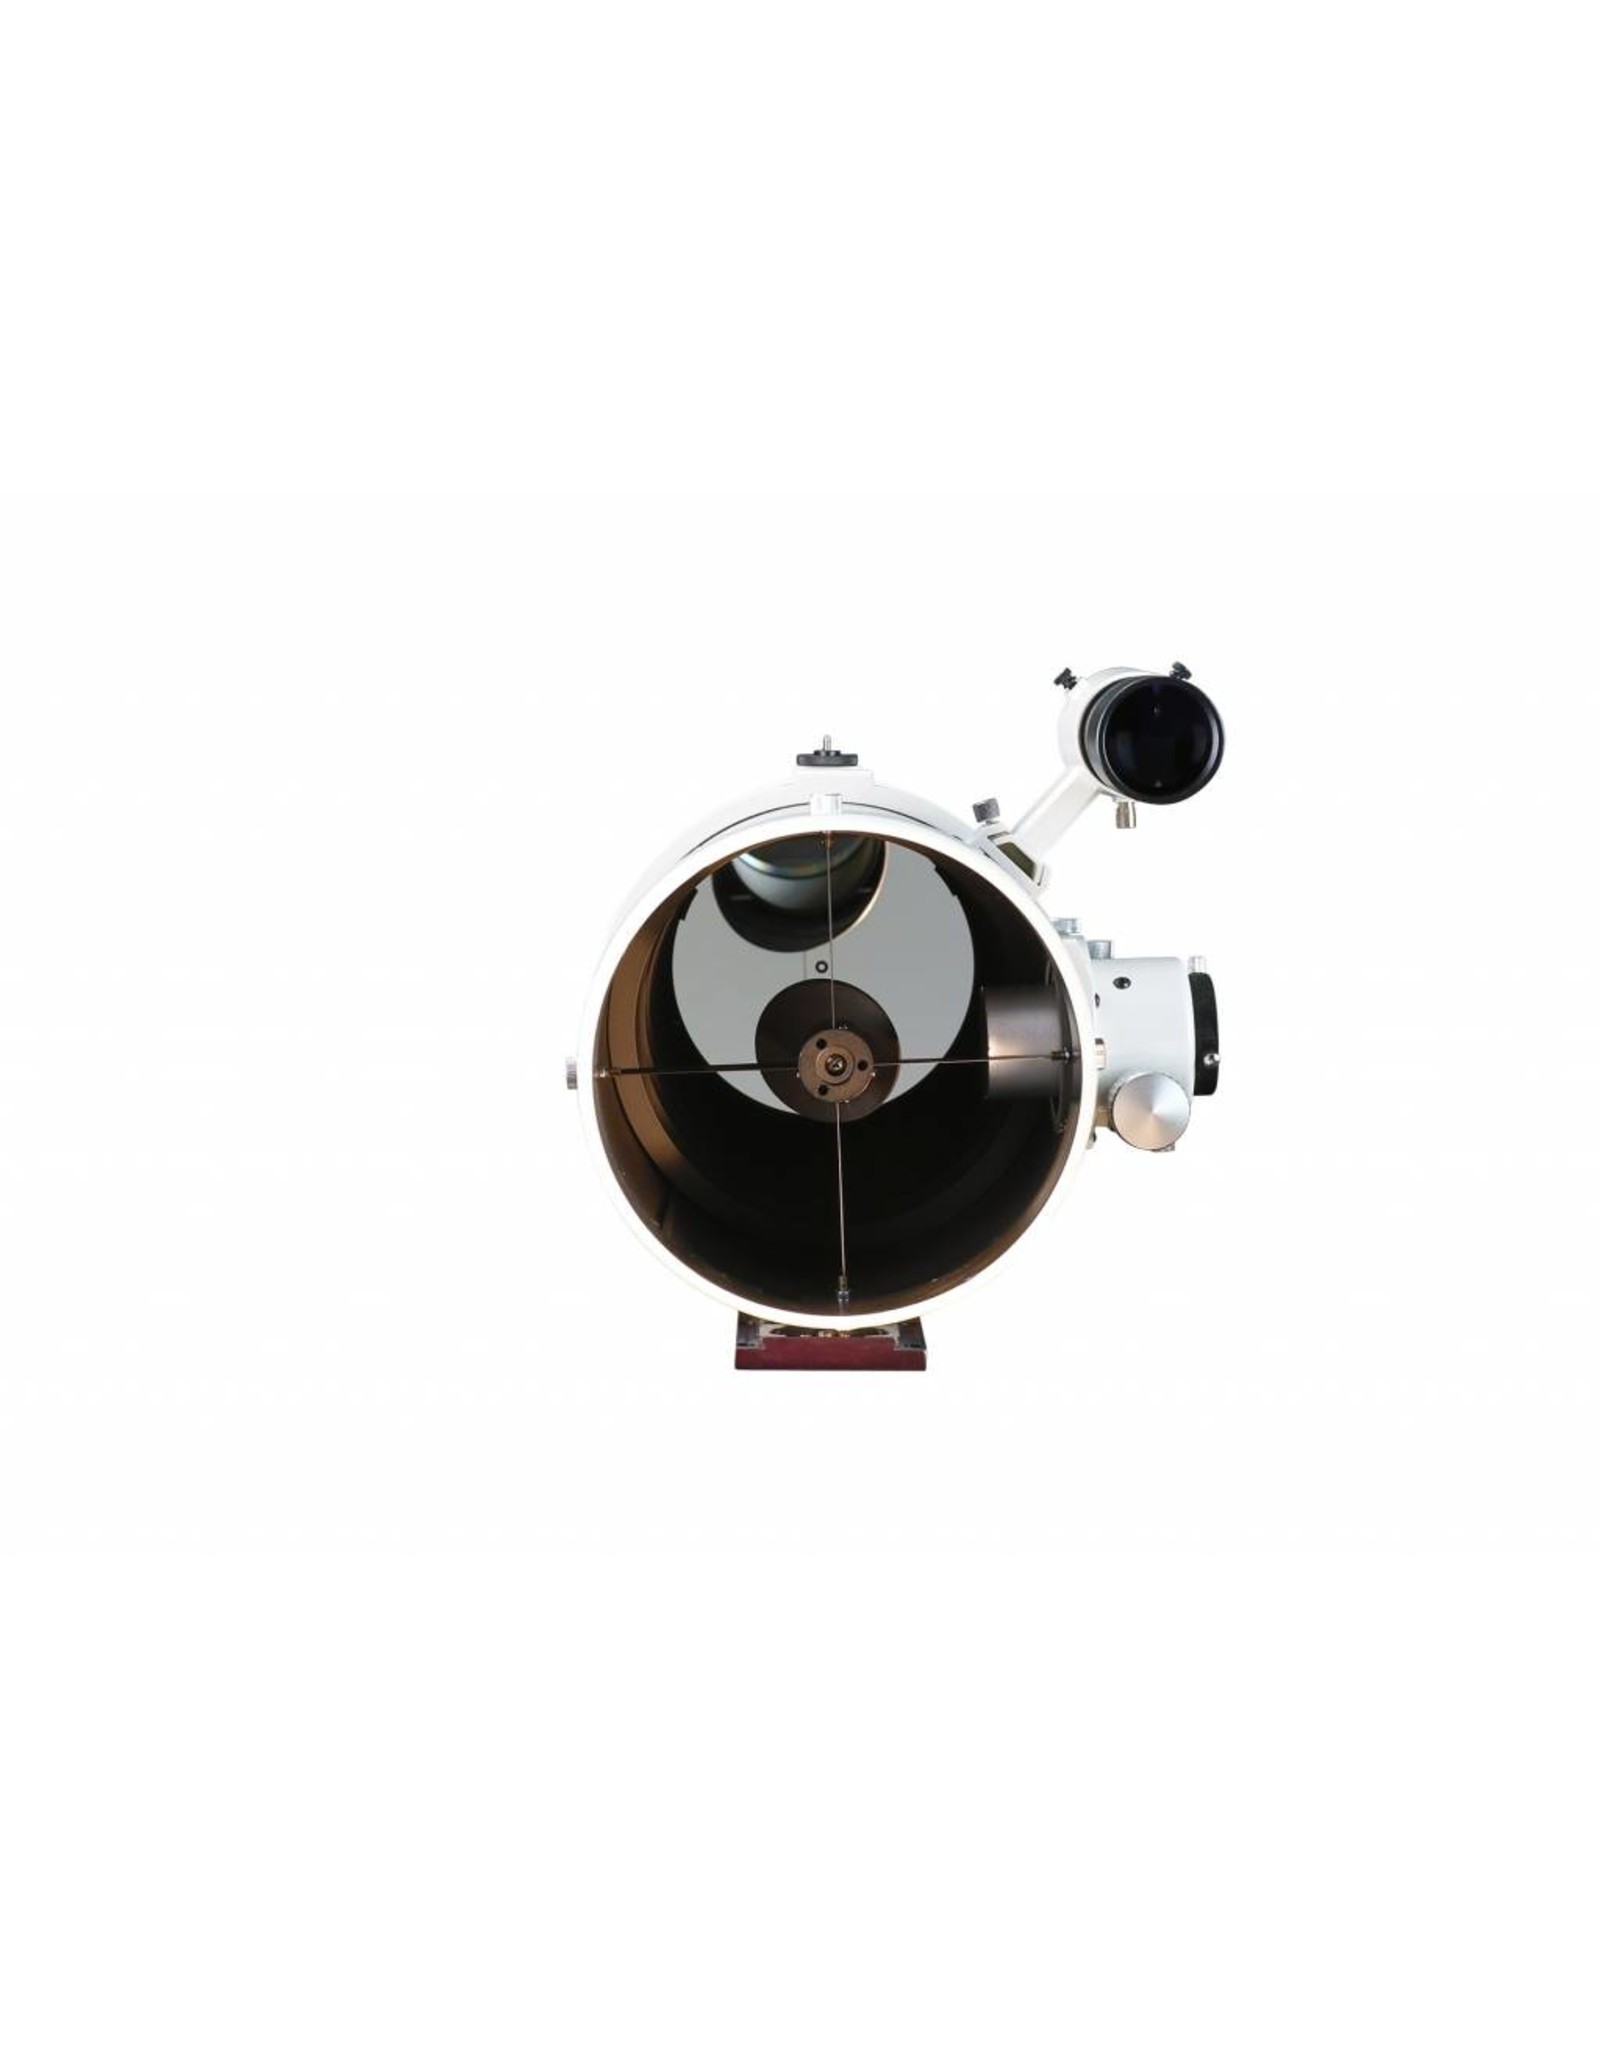 Sky-Watcher Sky-Watcher Quattro 200P Imaging Newtonian 8" (205 mm)